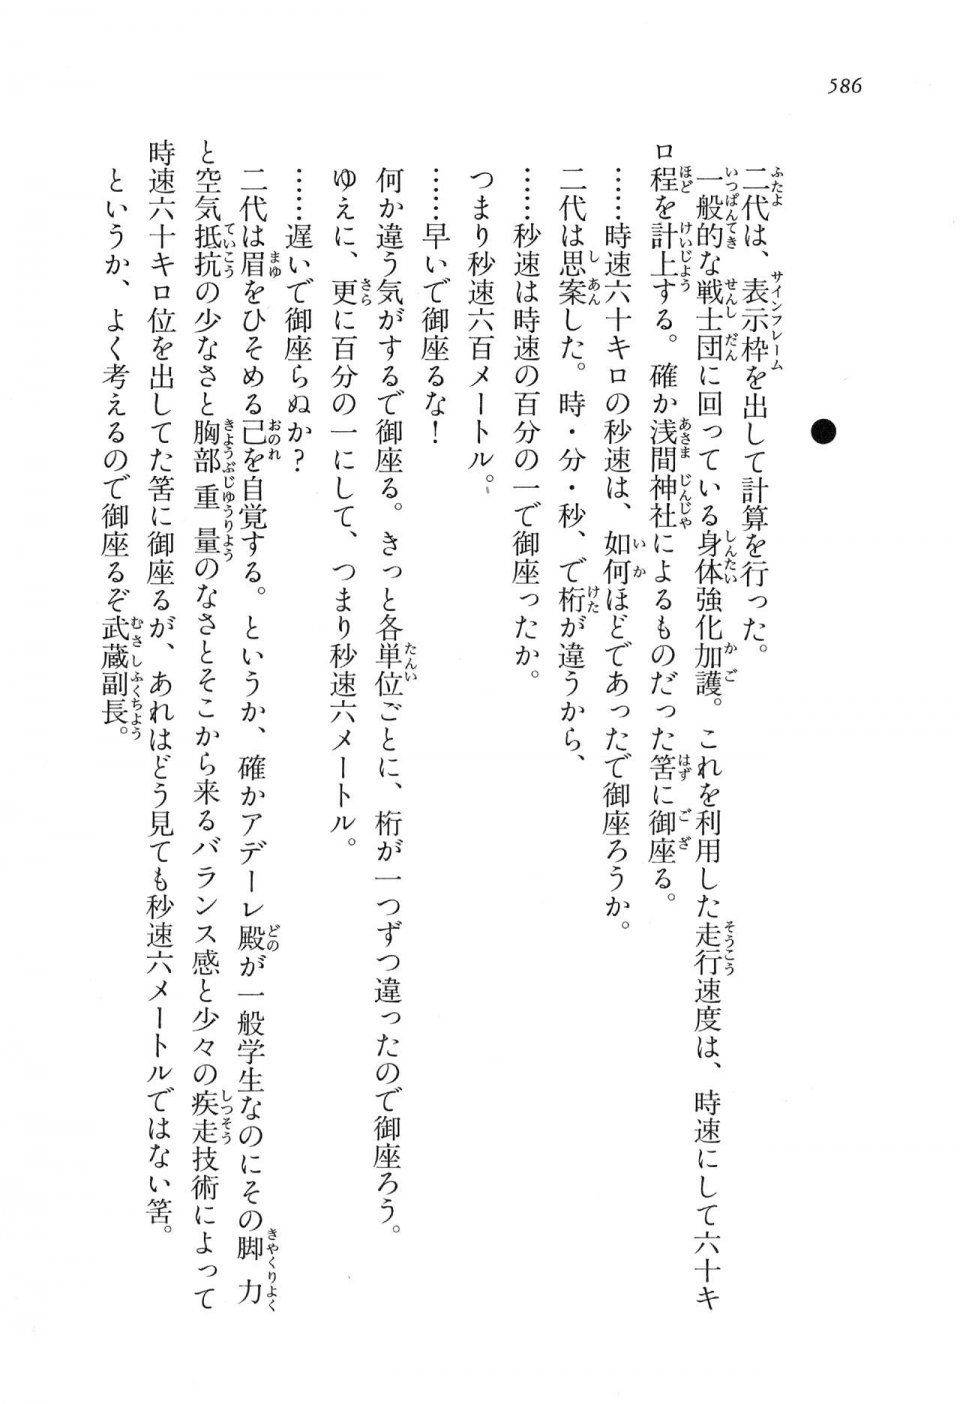 Kyoukai Senjou no Horizon LN Vol 16(7A) - Photo #586